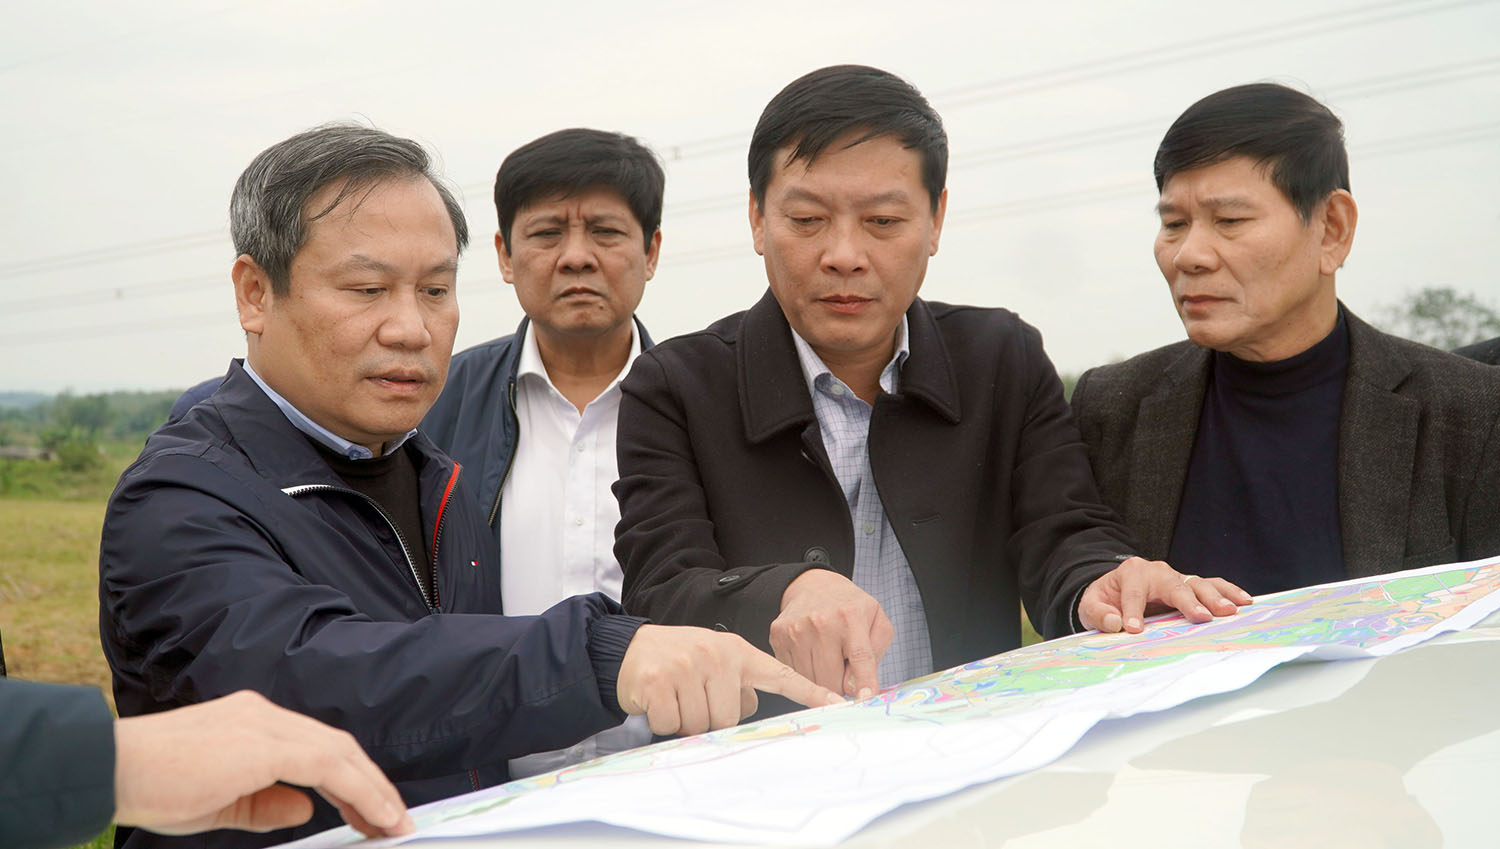 Đồng chí Bí thư Tỉnh ủy kiểm tra quy hoạch tuyến đường giao thông tại huyện Bố Trạch